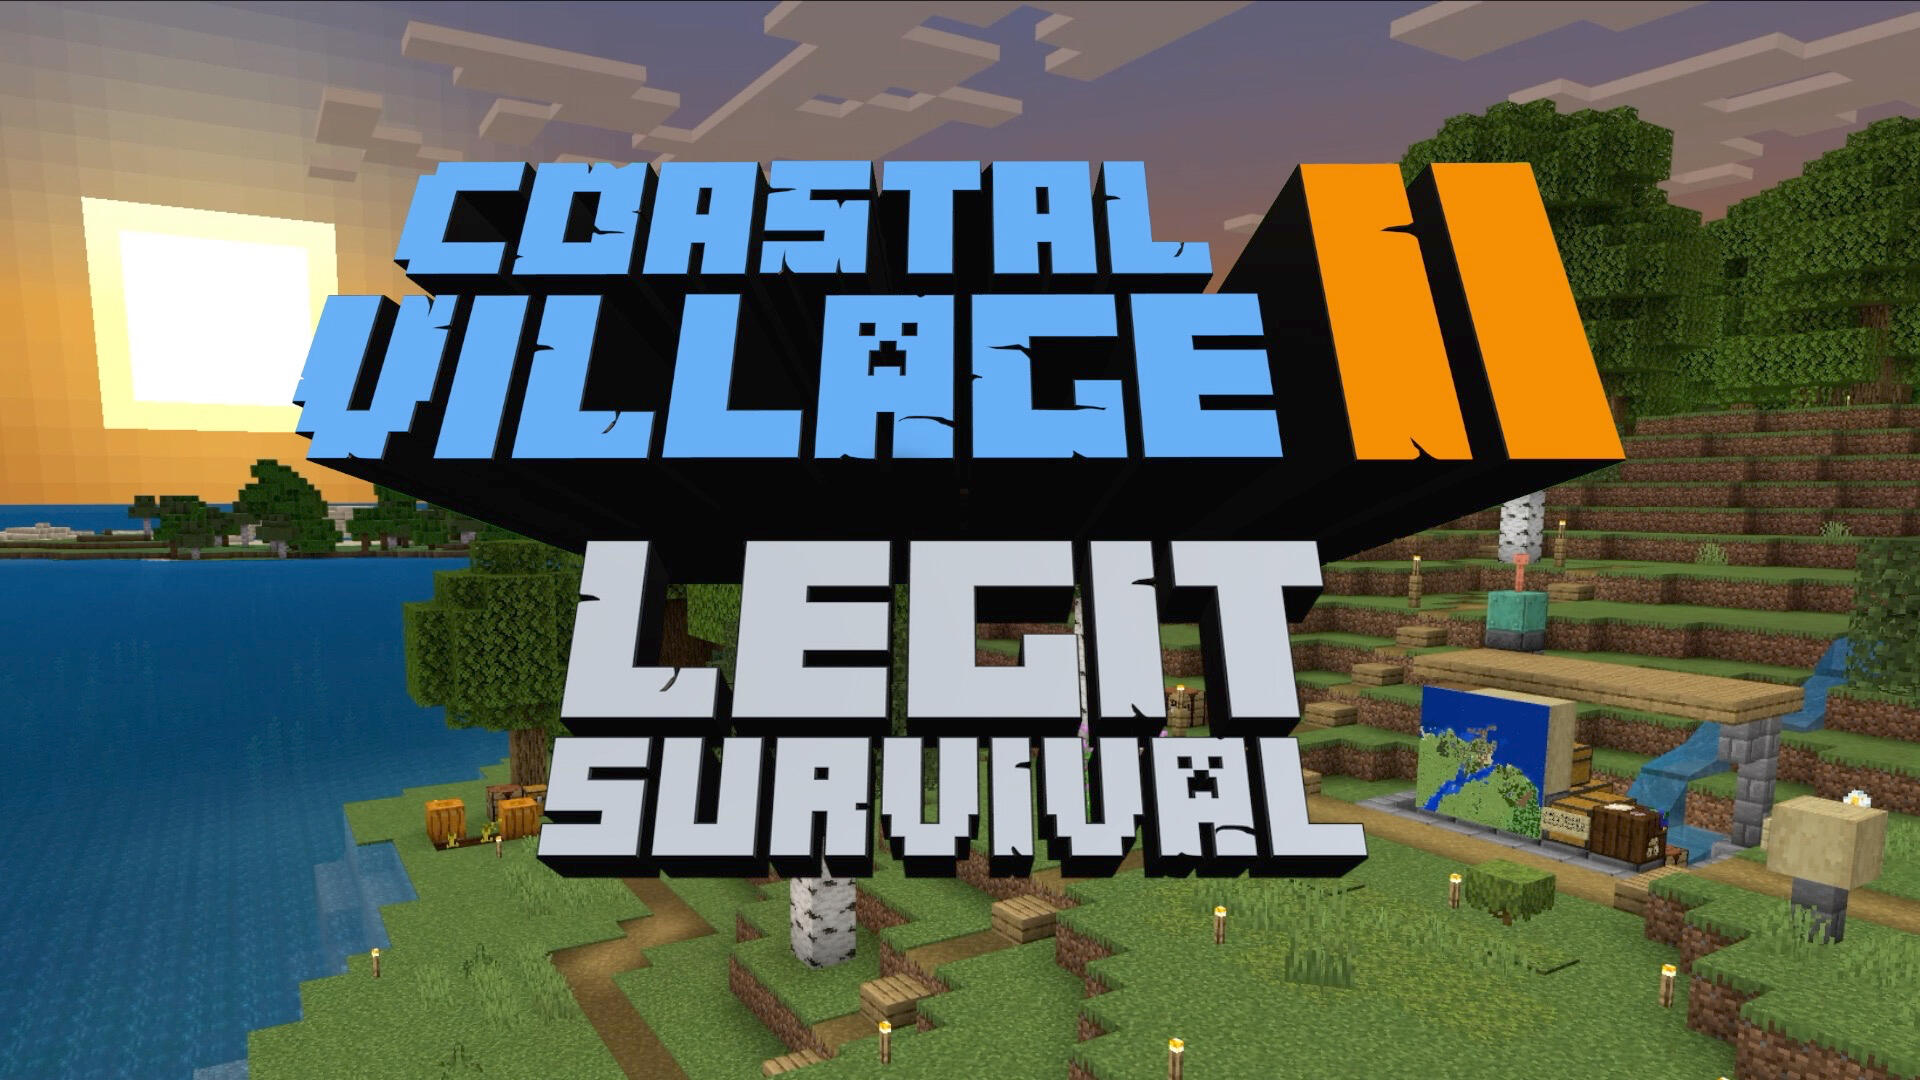 Coastal Village II